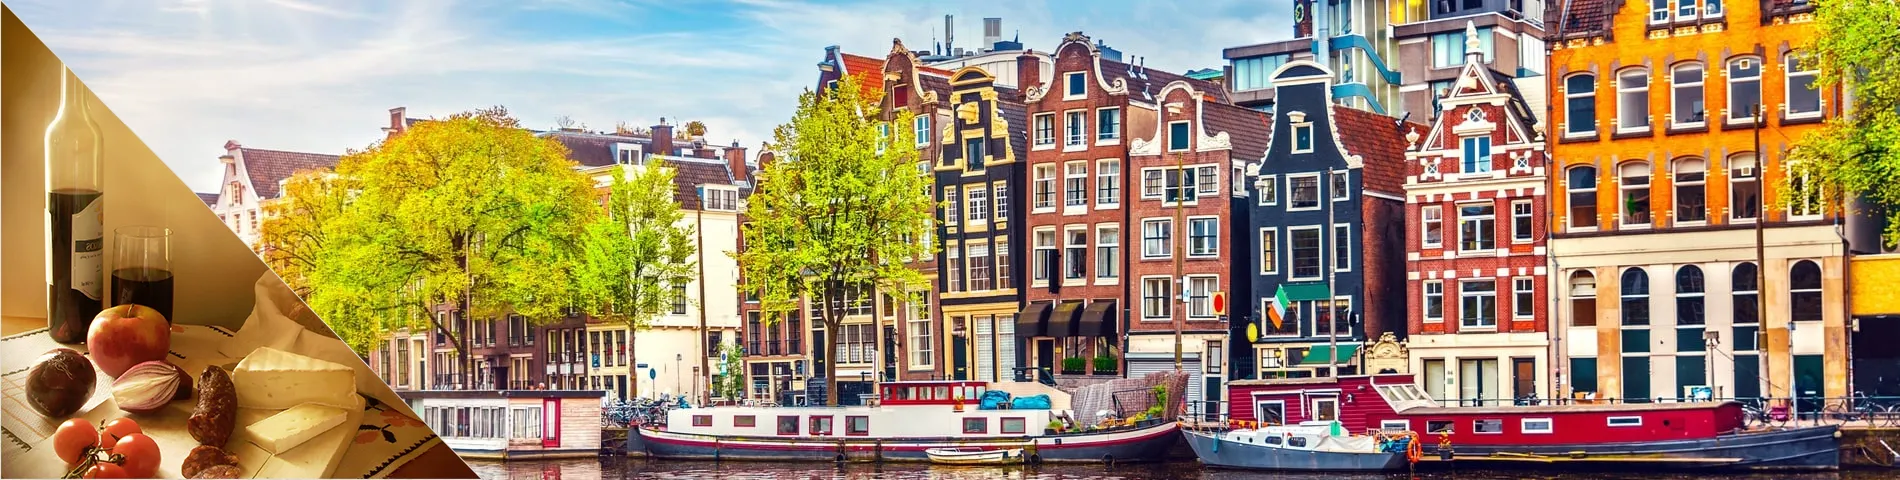 アムステルダム - 